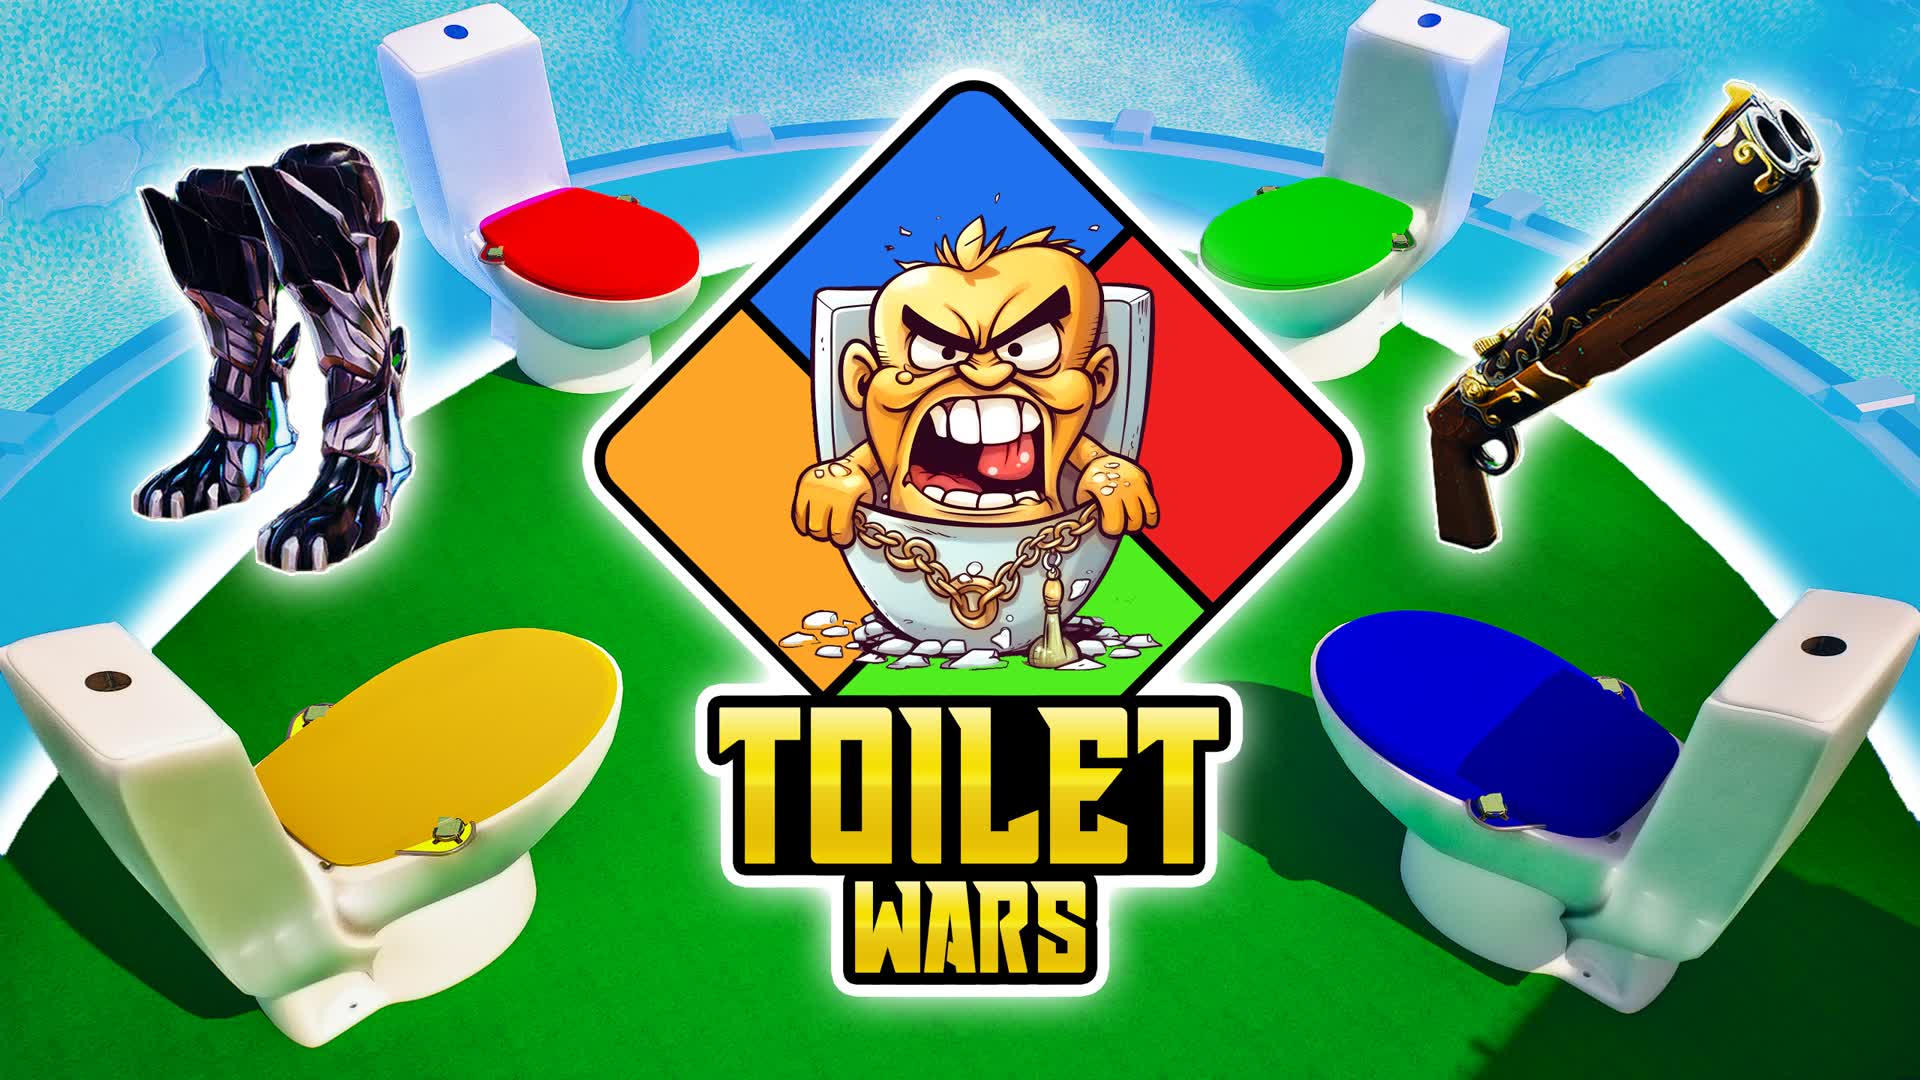 【注目の島】Toilet Wars 2.0 🚽